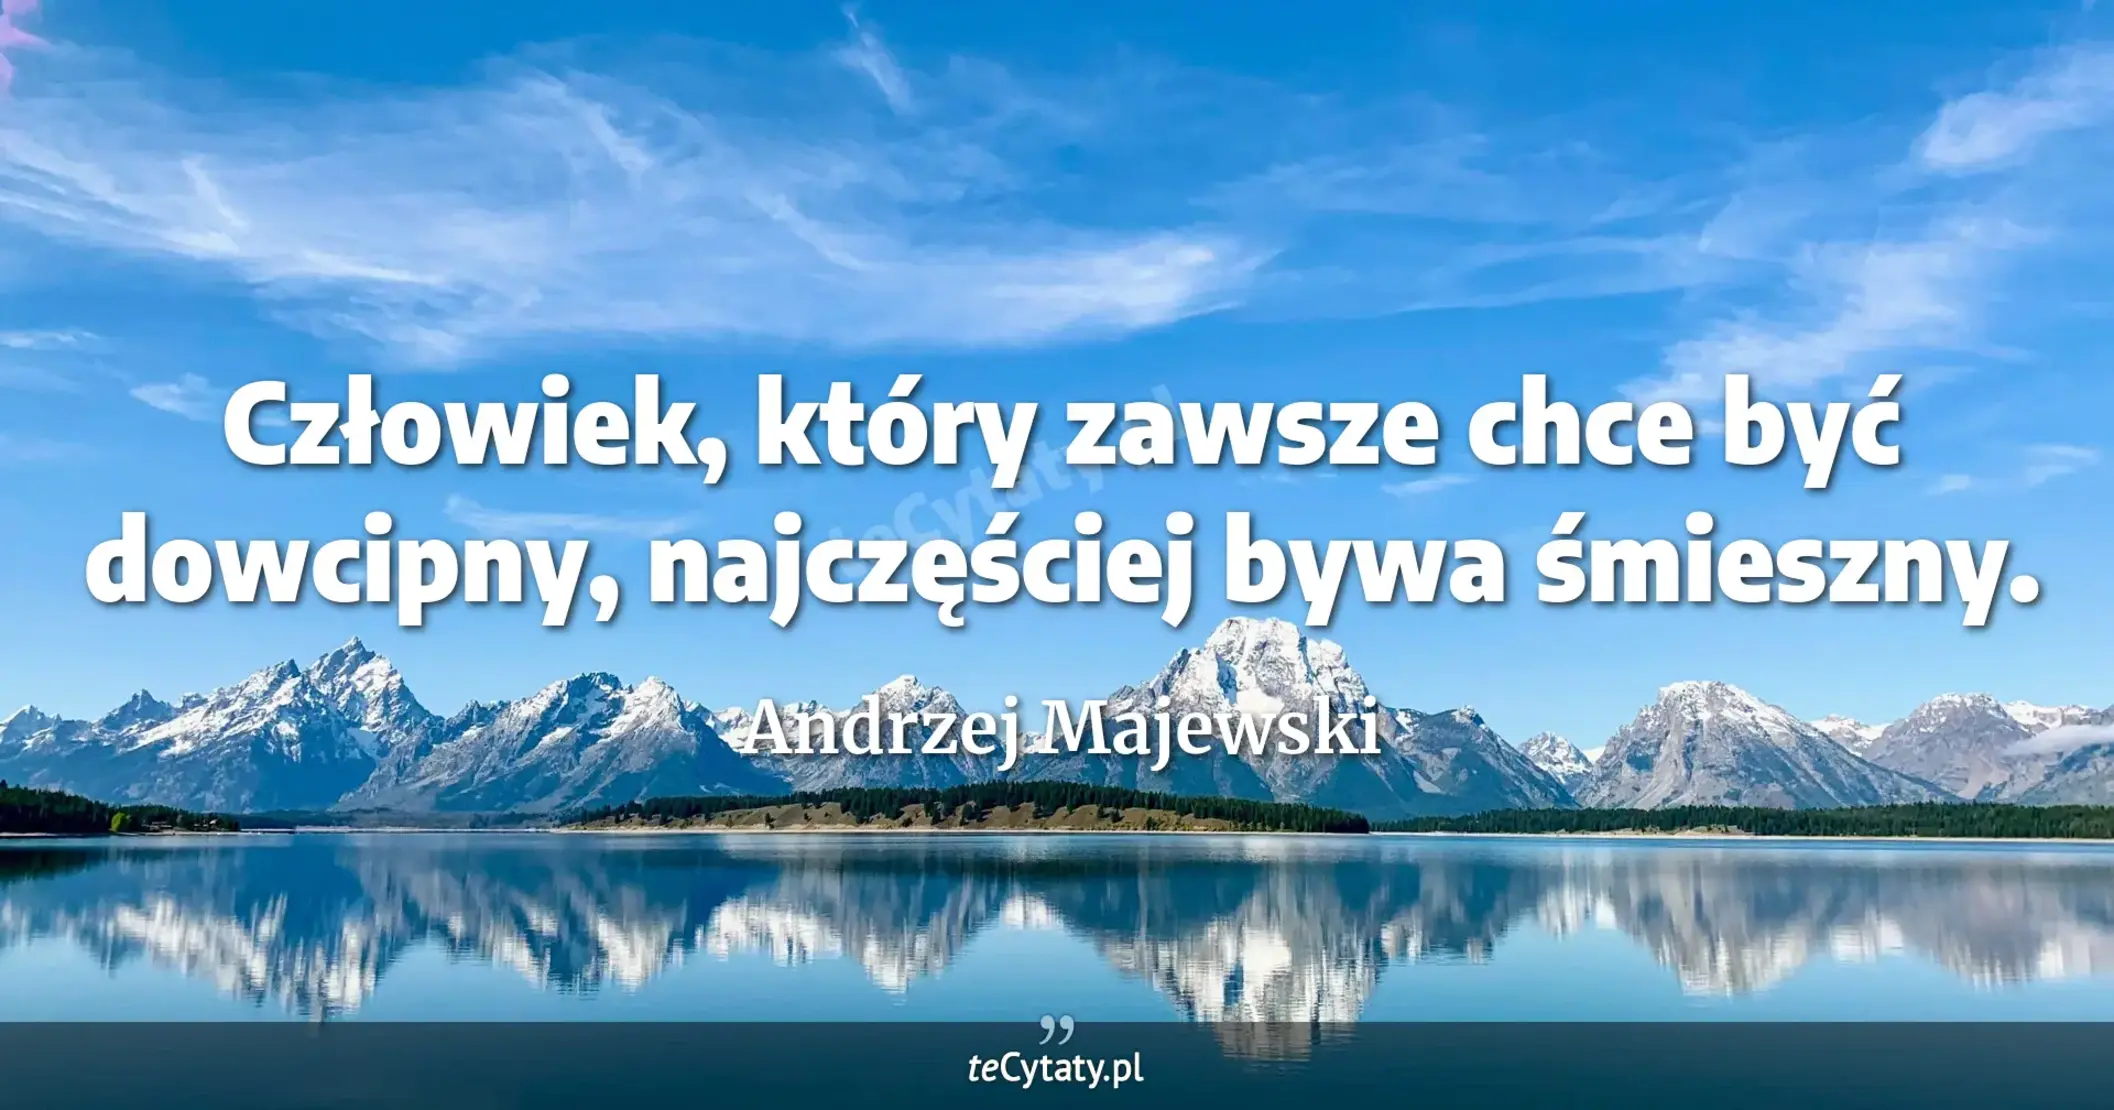 Człowiek, który zawsze chce być dowcipny, najczęściej bywa śmieszny. - Andrzej Majewski